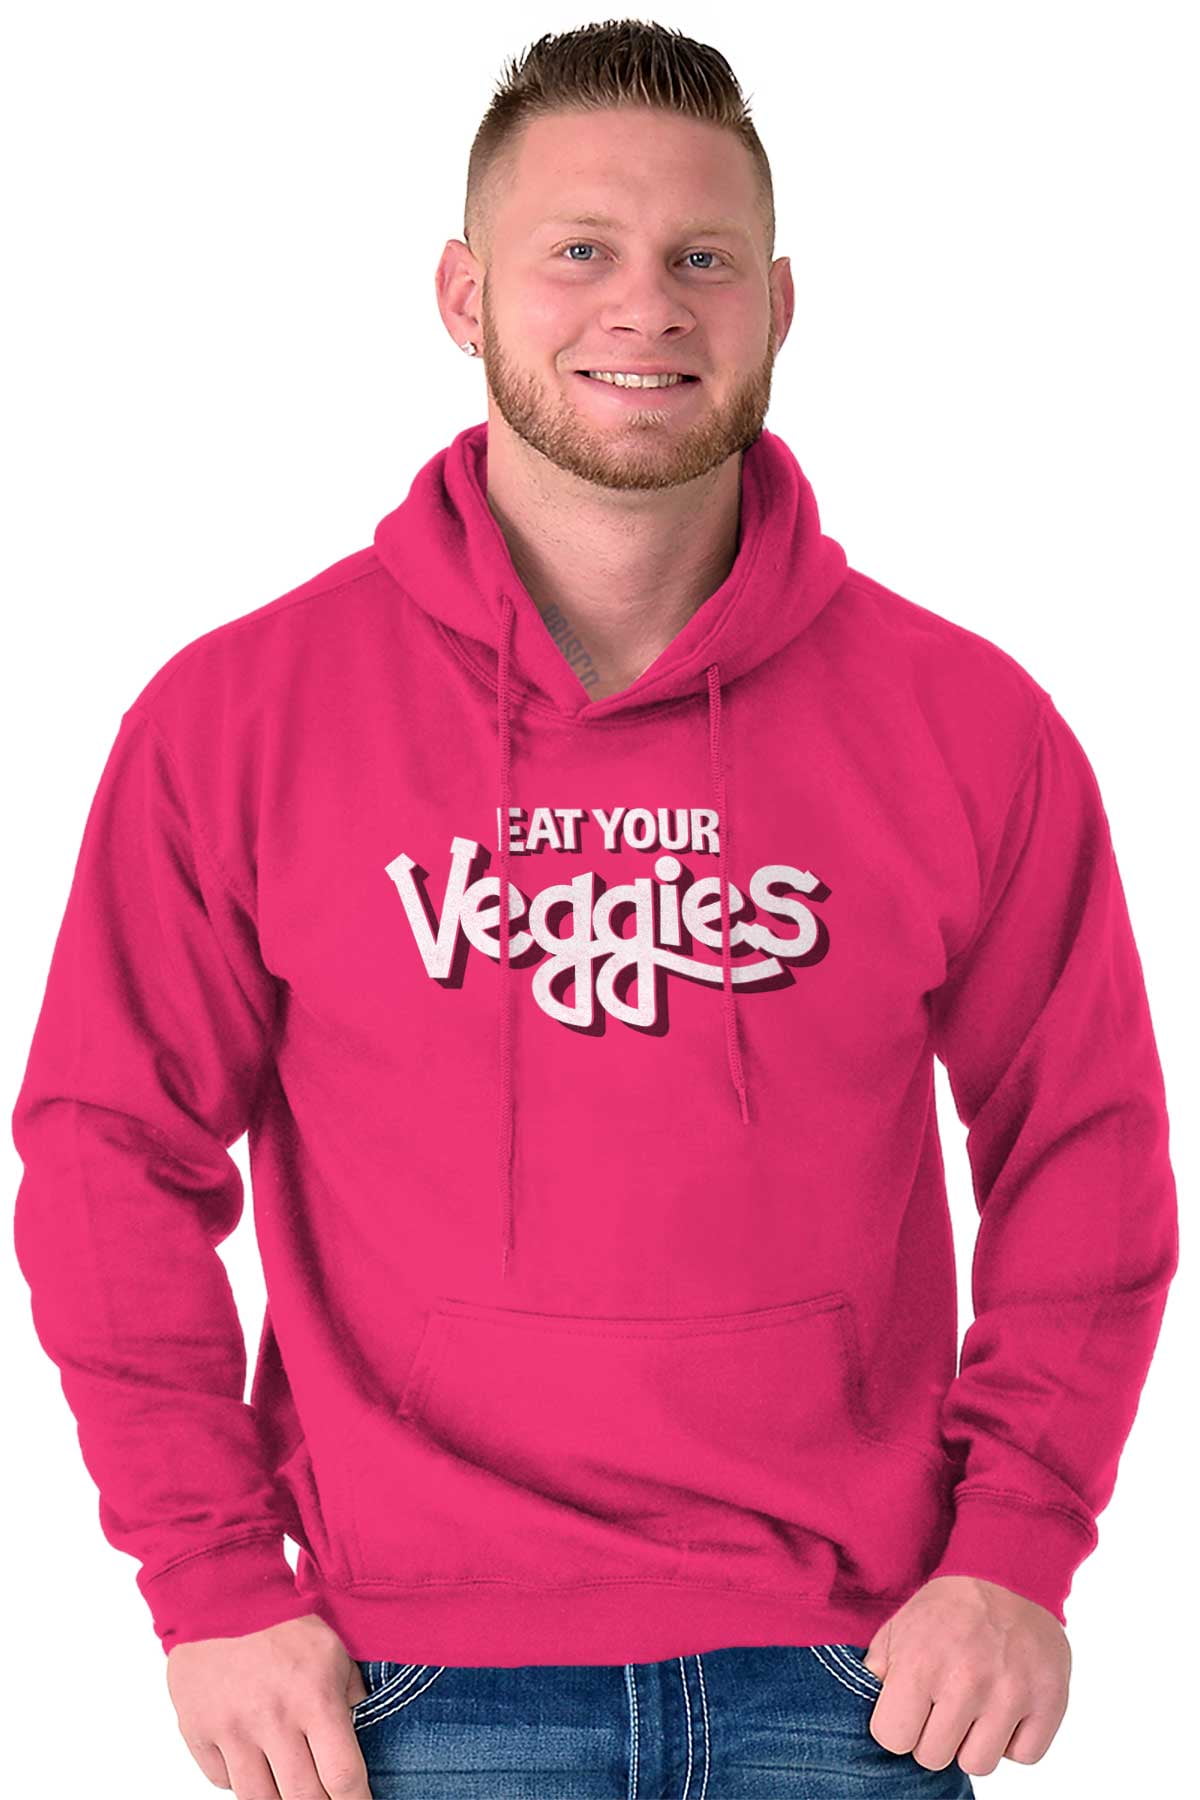 Retro Vegan Sweatshirt Vegan Hoodie Vegan Crewneck Vegan Sweatshirt Plant Based Sweatshirt,